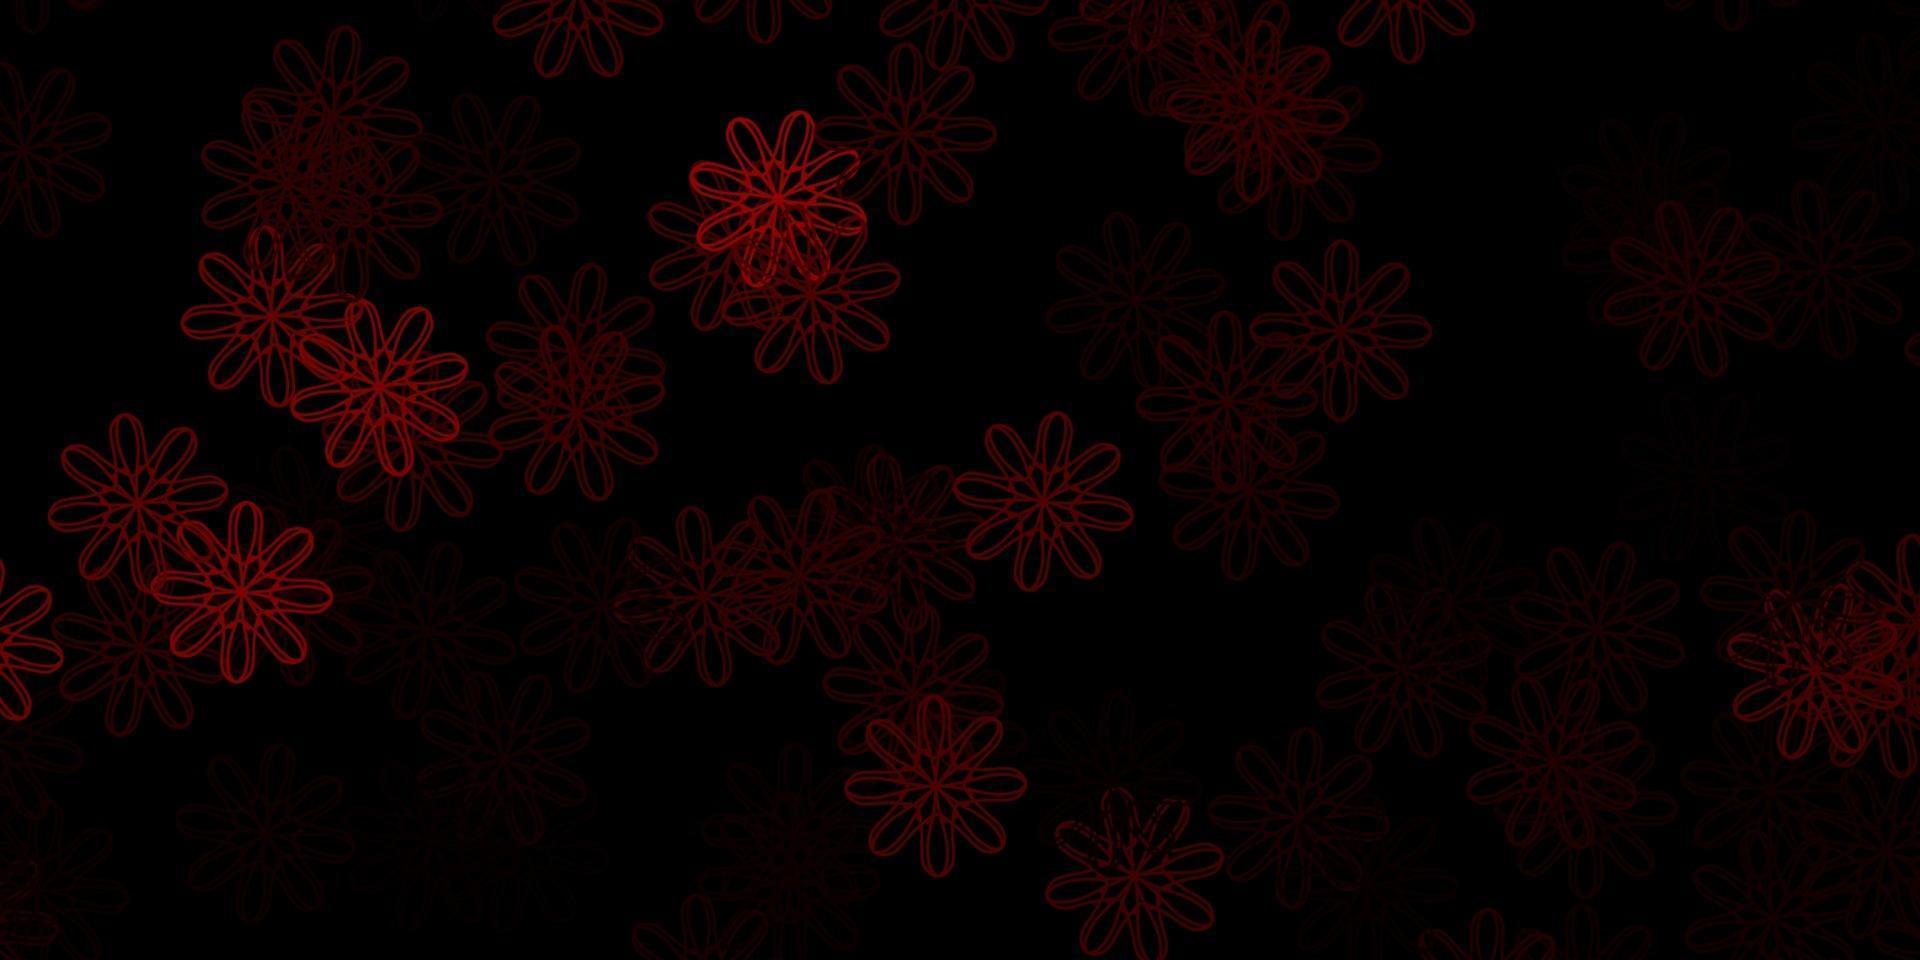 trama vettoriale rosso scuro con forme di memphis.